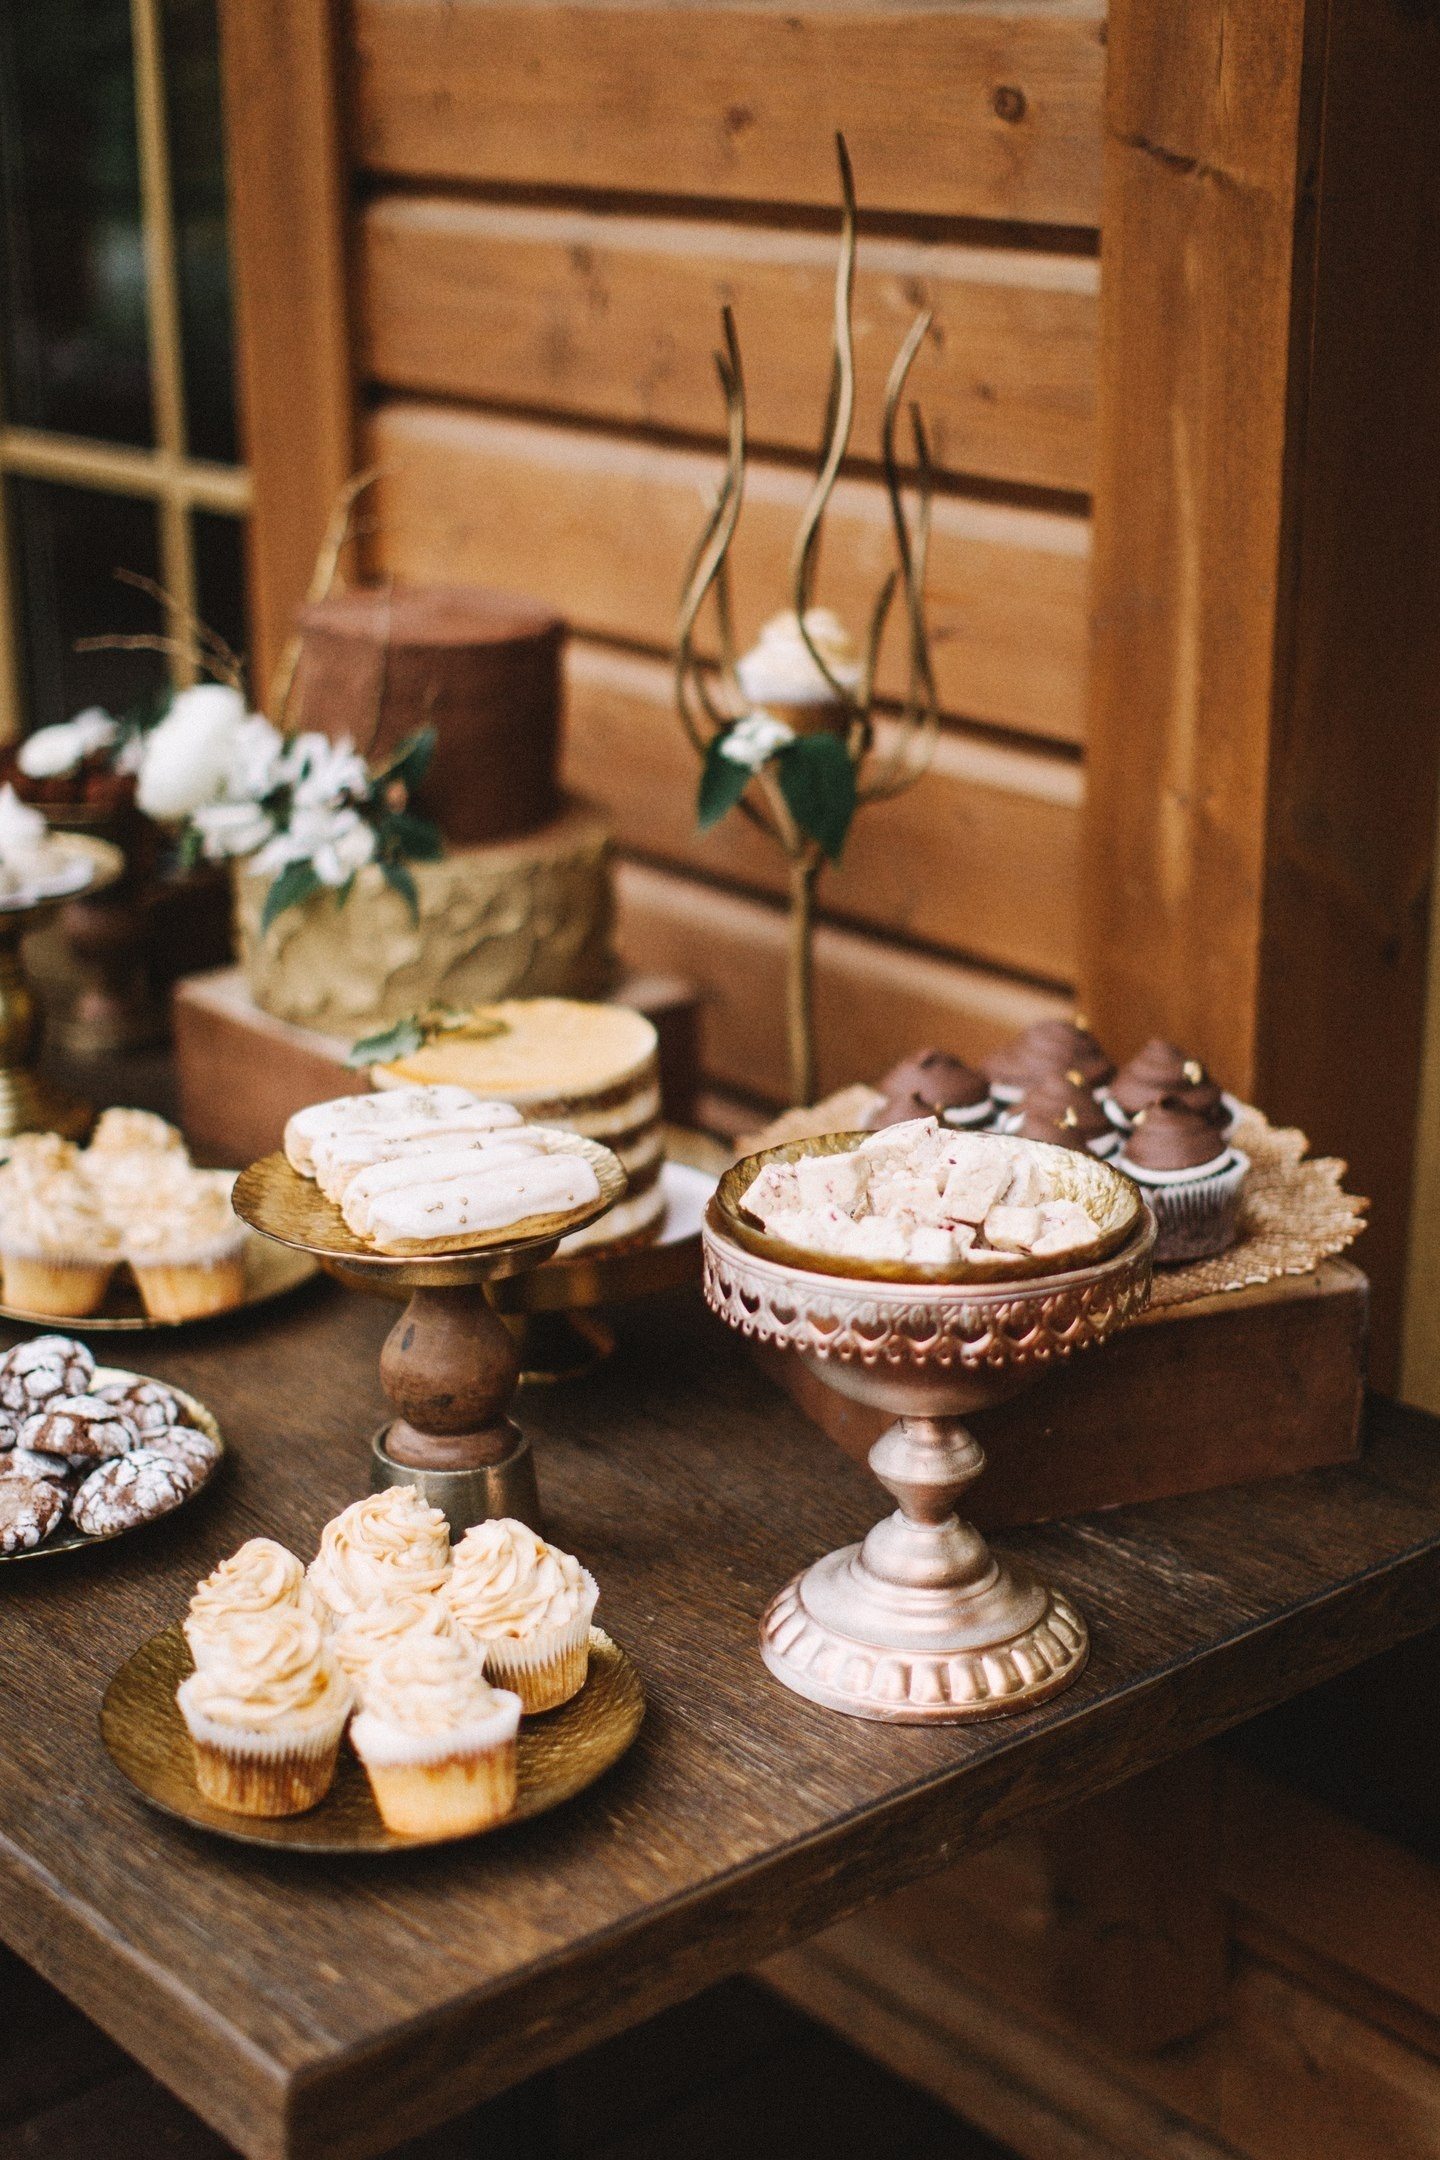 Сломљени чоколадни штапићи, тартуфи, моцха прозрачни десерти, украшени зрнима кафе и ажурним колачима са шлагом у свадбеном стилу изгледају сјајно у друштву старих кутија и украшених штандова